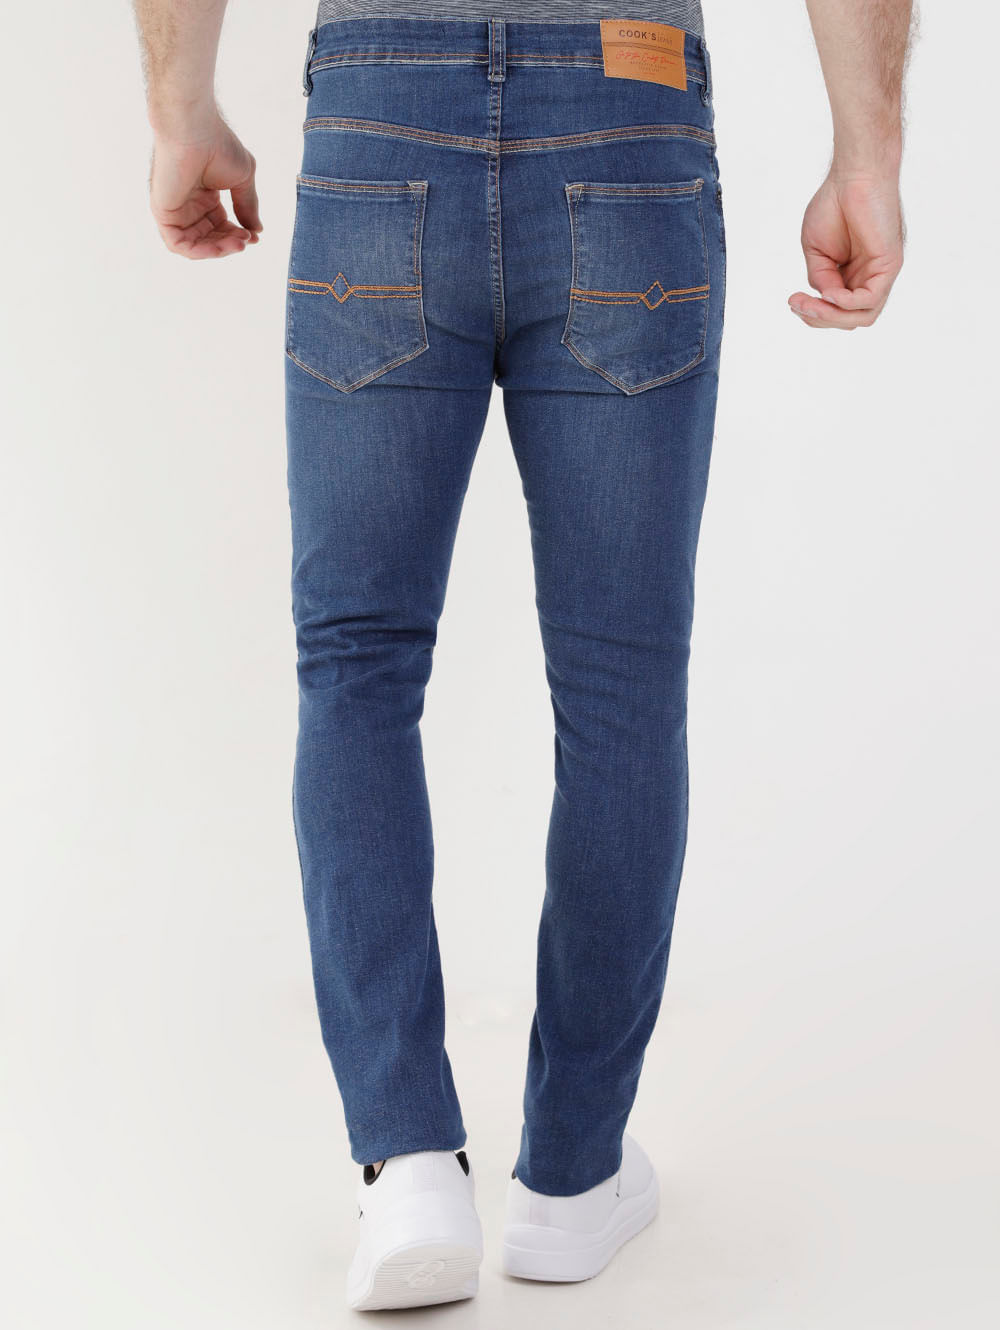 Calça Jeans Super Skinny com Cós Fixo Preto